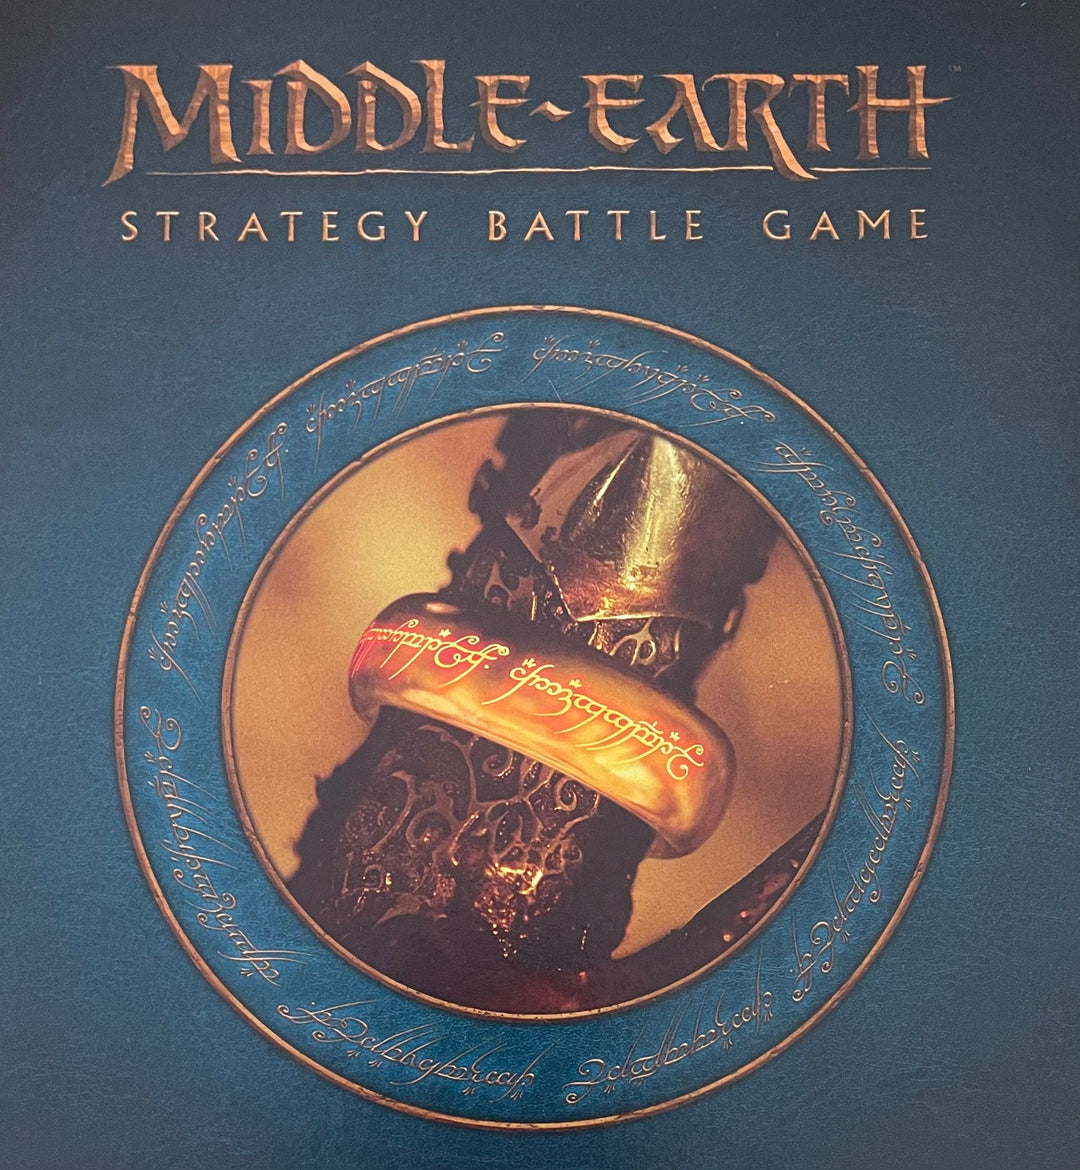 Middle-Earth: Gandalf the Grey Foot, Mounted and on Cart (Mail Order) (Gandalf der Graue zu Fuß, beritten und auf Karren)